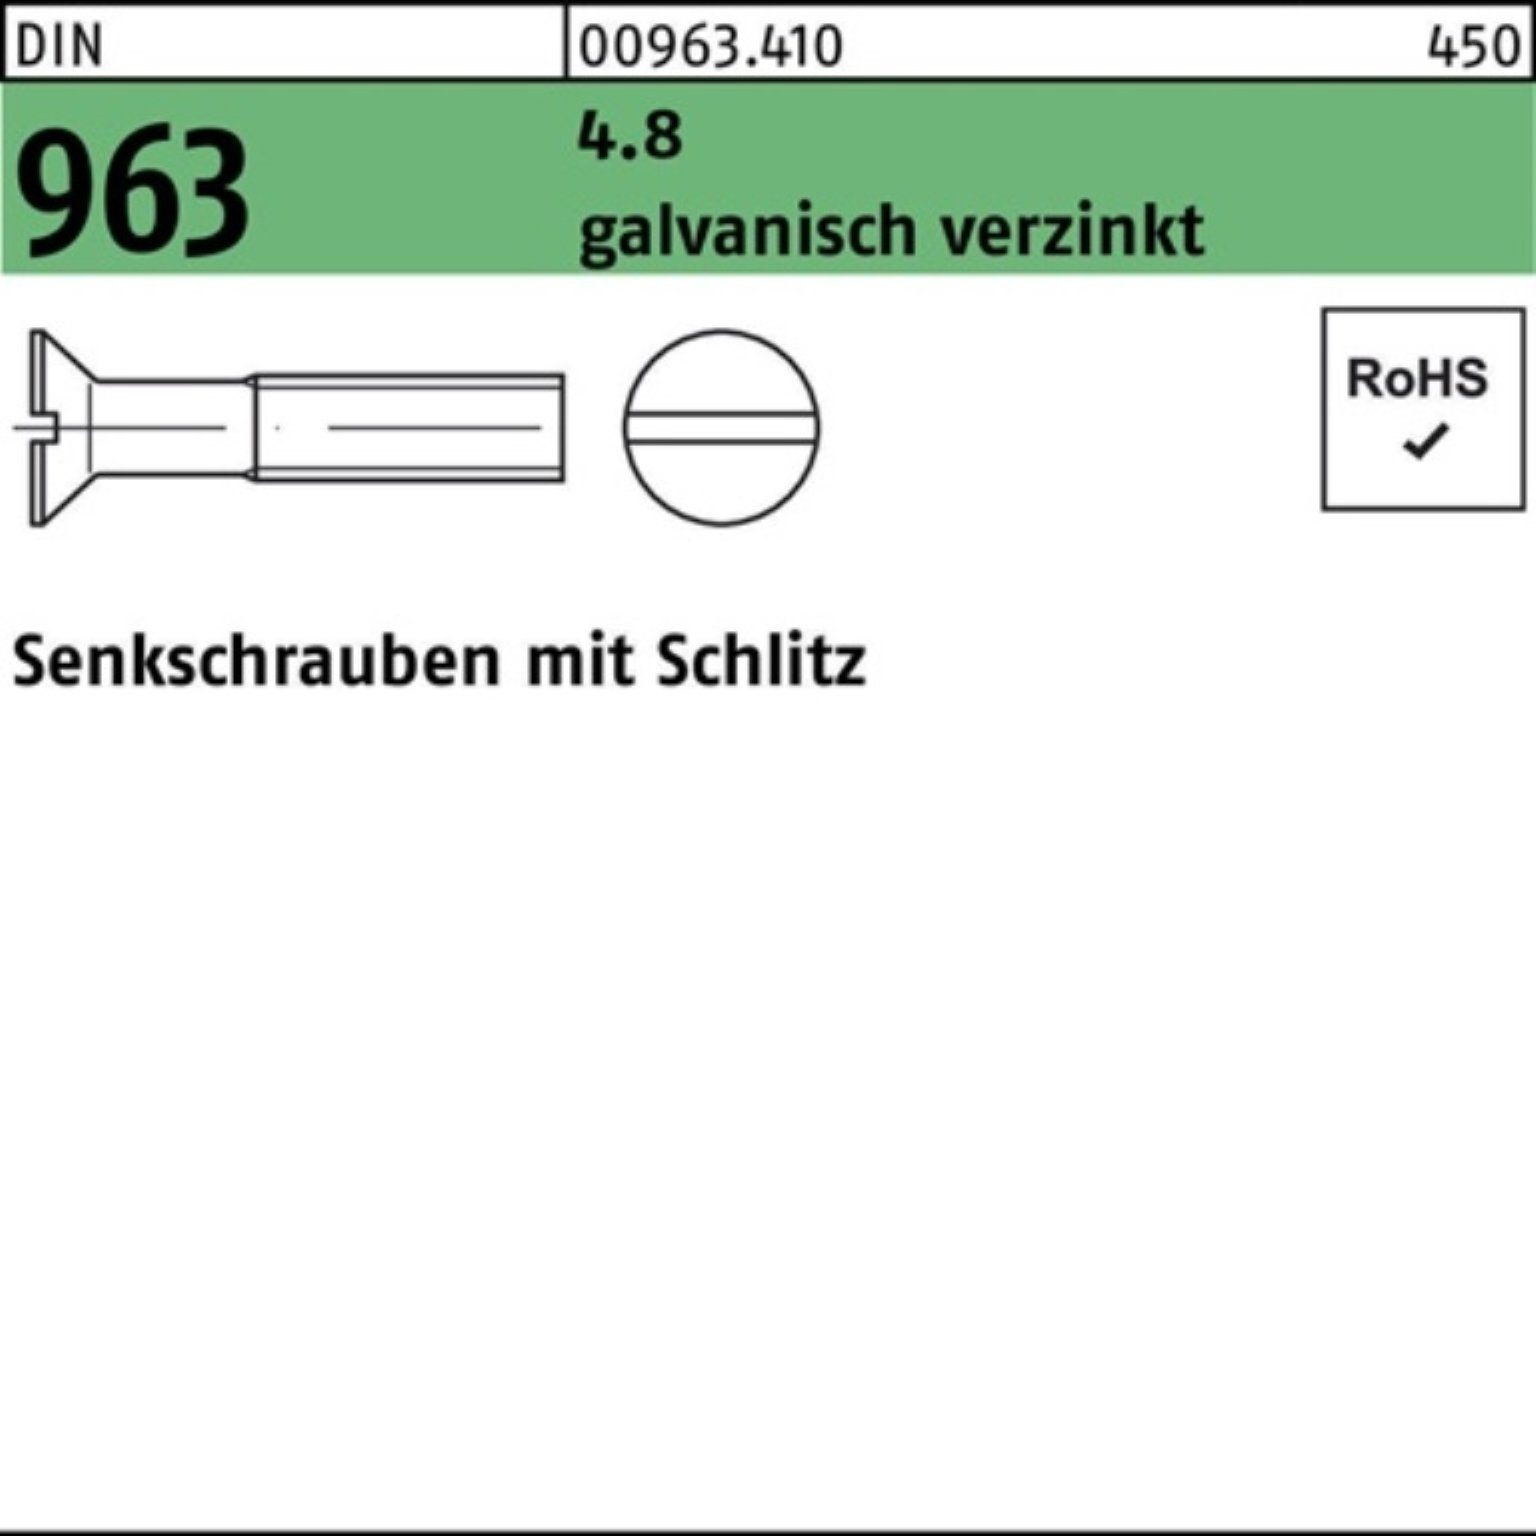 Schlitz Senkschraube Stüc 200er 963 Reyher galv.verz. M2x 200 Pack Senkschraube DIN 4.8 6